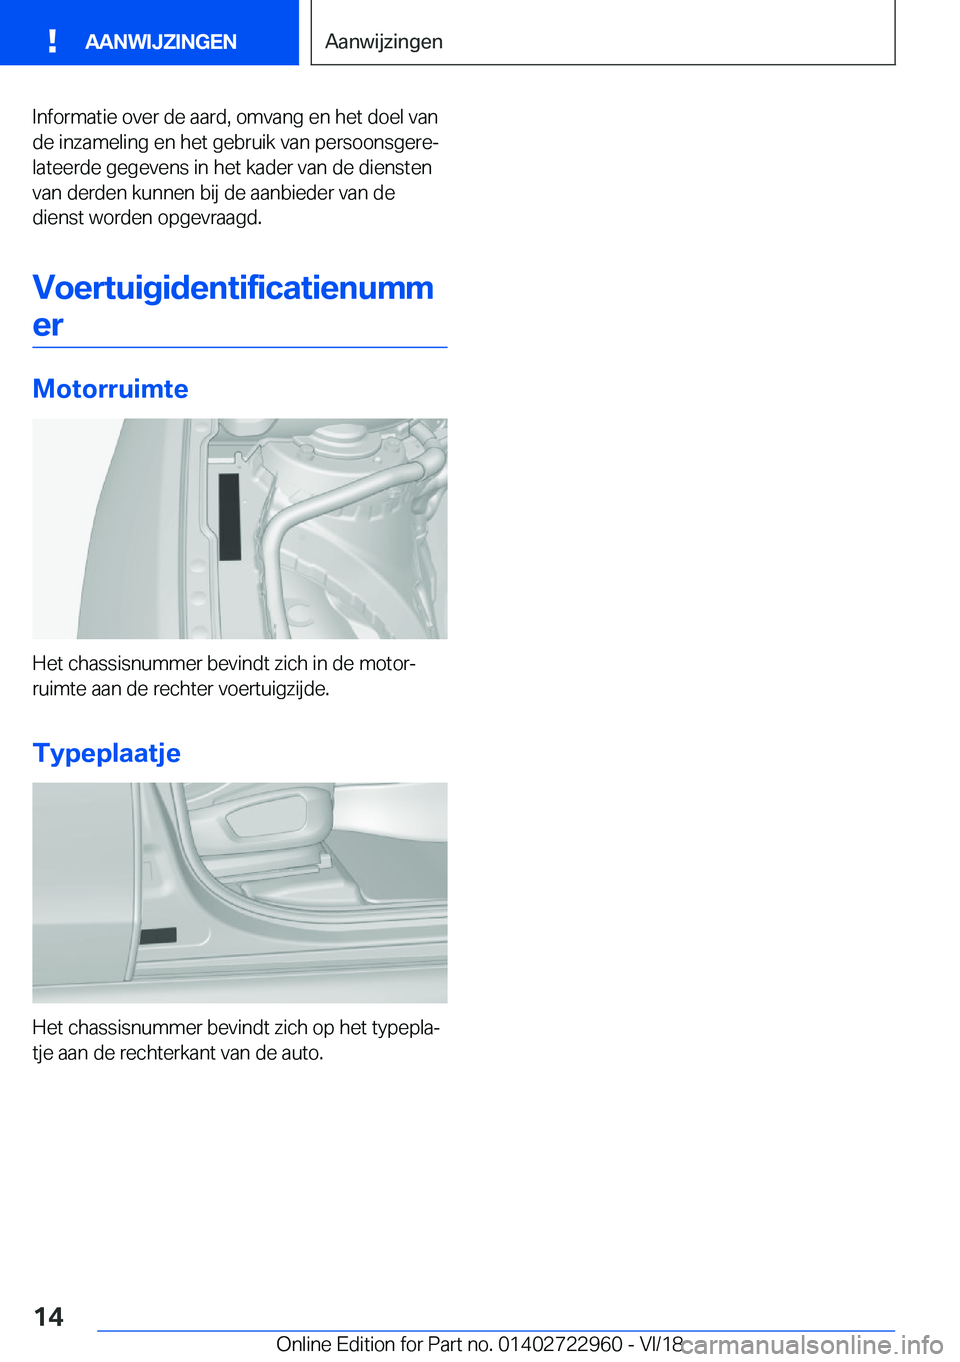 BMW M4 2019  Instructieboekjes (in Dutch) �I�n�f�o�r�m�a�t�i�e��o�v�e�r��d�e��a�a�r�d�,��o�m�v�a�n�g��e�n��h�e�t��d�o�e�l��v�a�n
�d�e��i�n�z�a�m�e�l�i�n�g��e�n��h�e�t��g�e�b�r�u�i�k��v�a�n��p�e�r�s�o�o�n�s�g�e�r�ej
�l�a�t�e�e�r